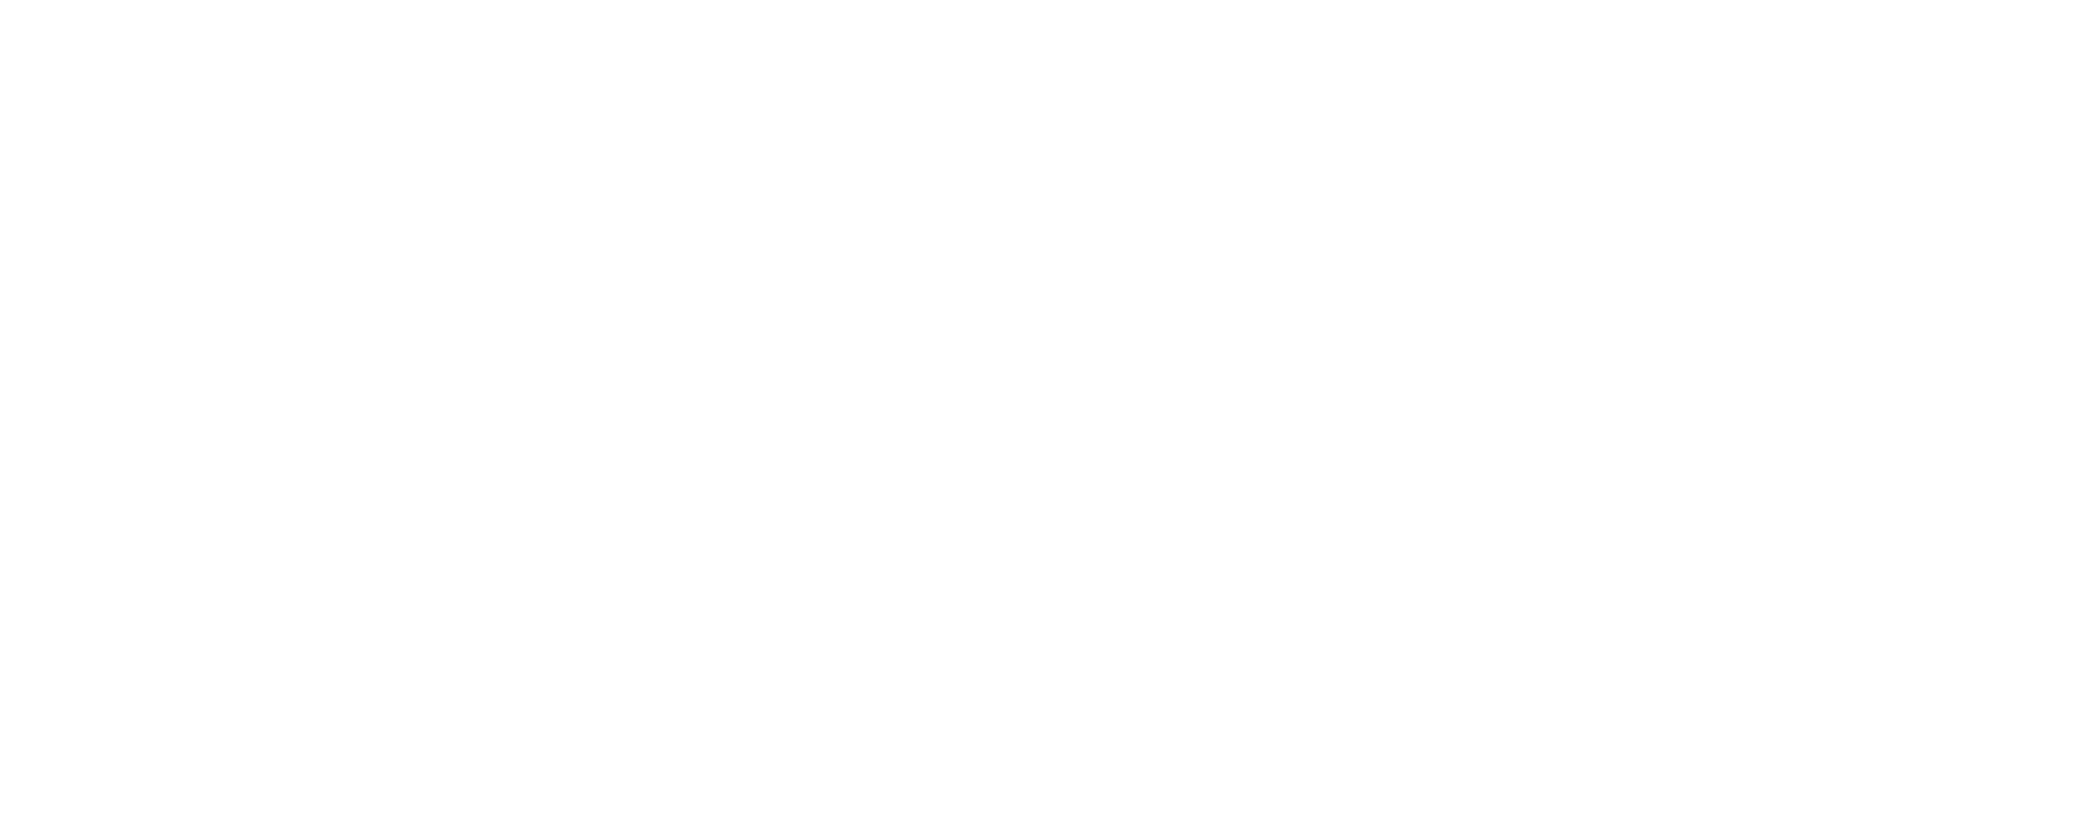 Sabda Creative